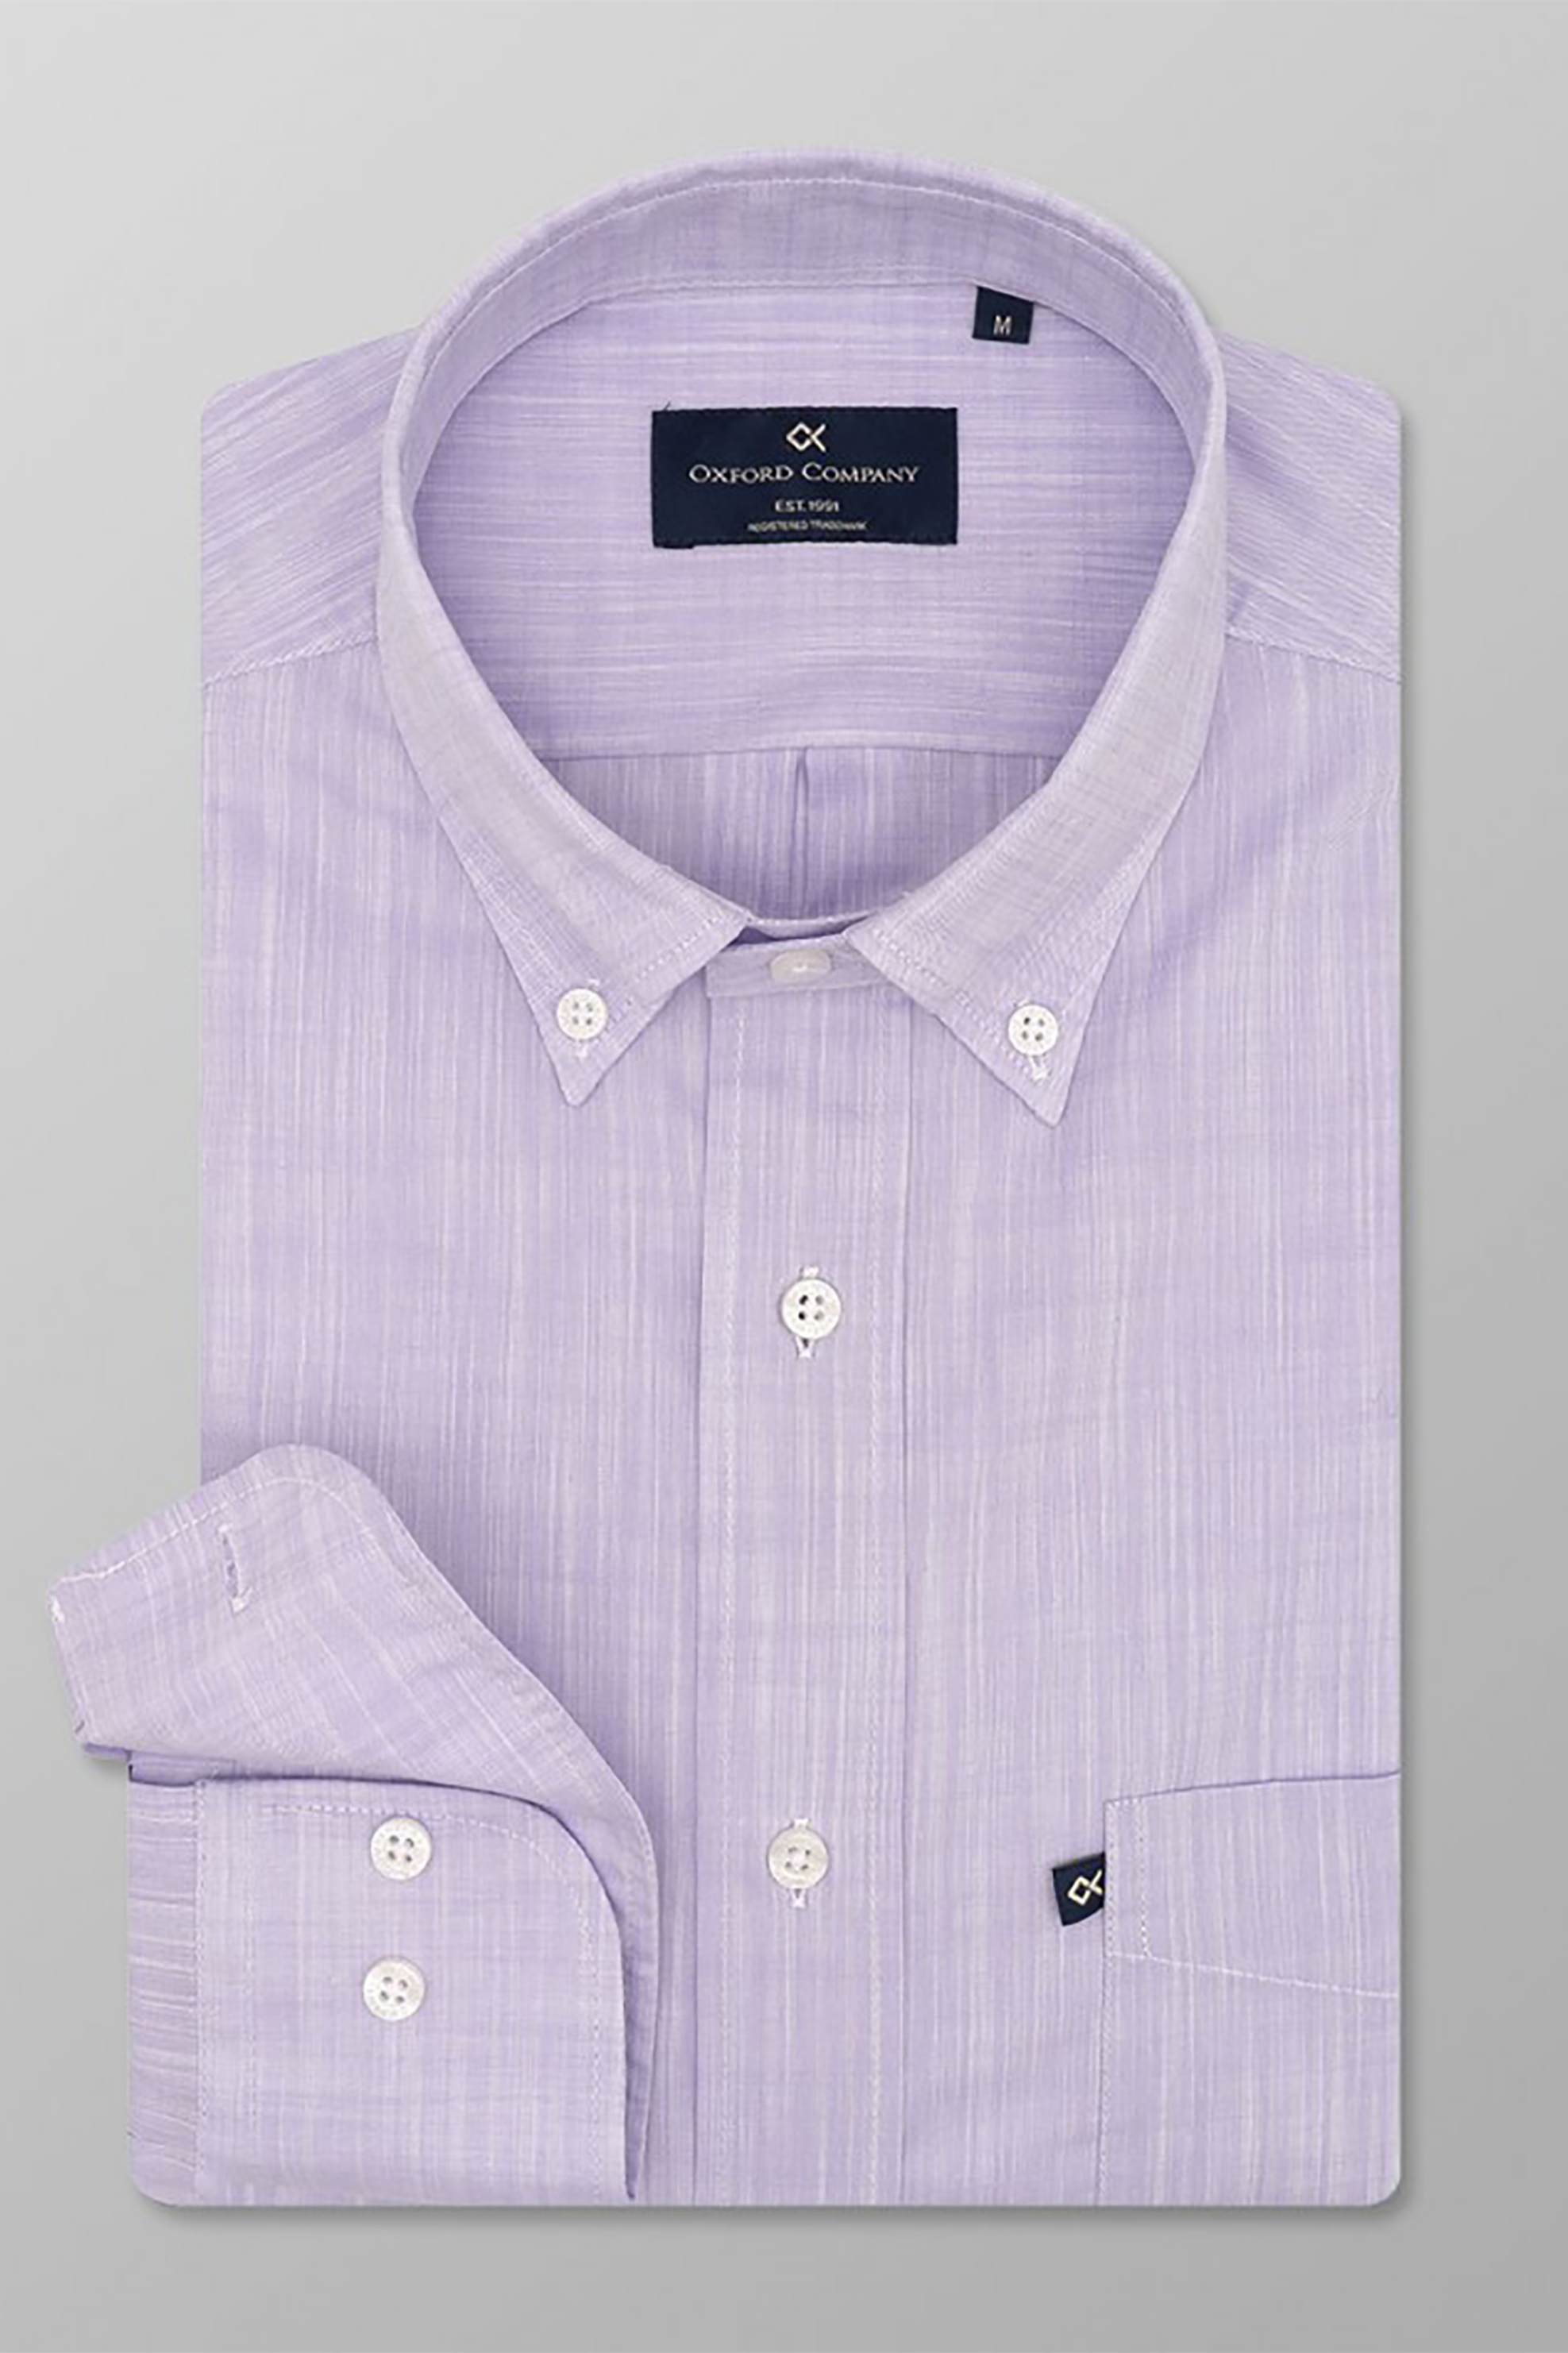 Ανδρική Μόδα > Ανδρικά Ρούχα > Ανδρικά Πουκάμισα > Ανδρικά Πουκάμισα Casual Oxford Company ανδρικό πουκάμισο button down Regular Fit - F110-BL10.07 Λιλά